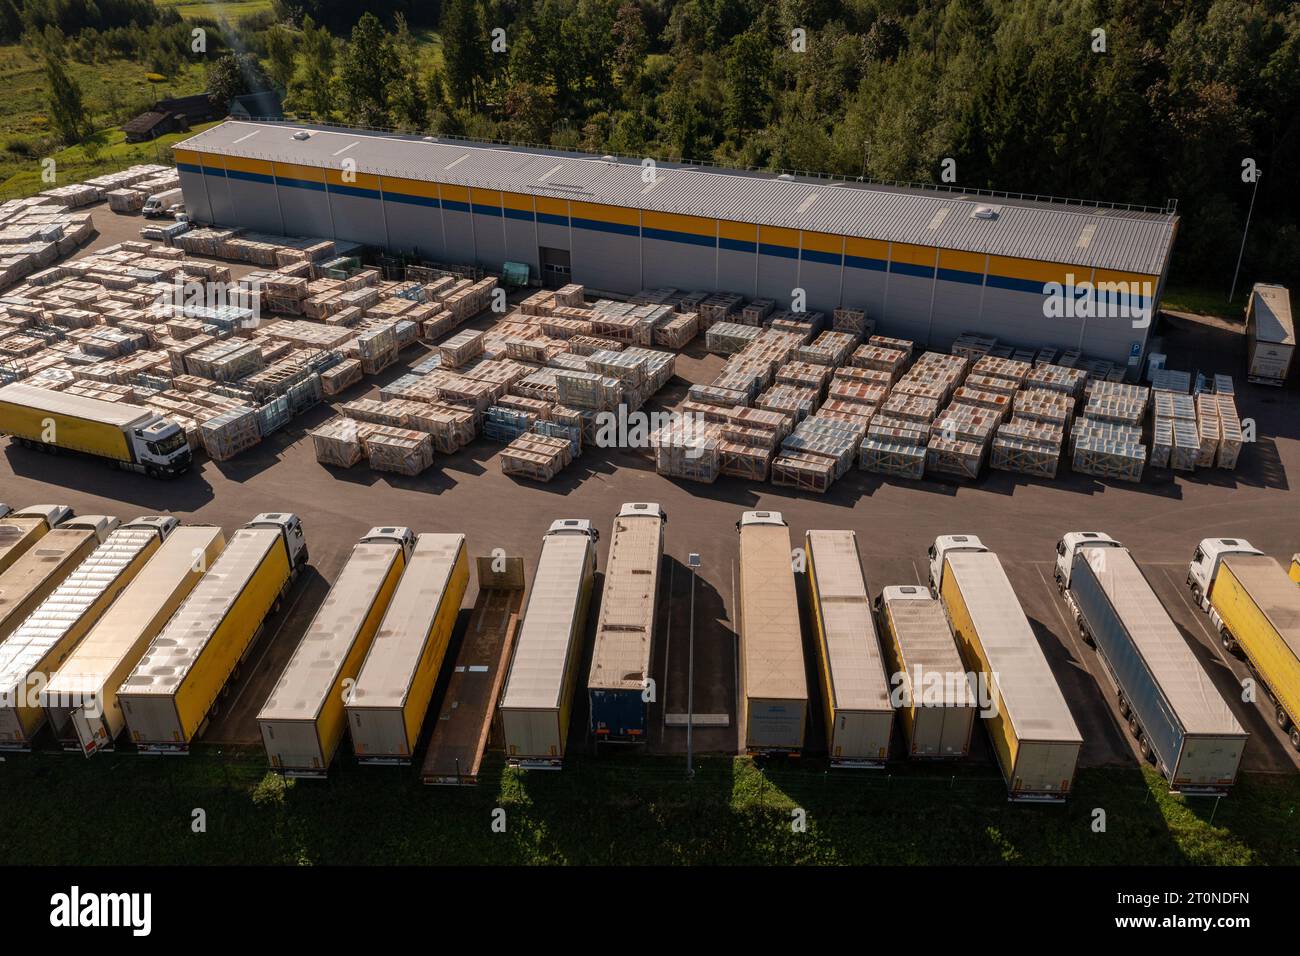 Drohnenfotografie von Logistiklagern und geparkten LKW an sonnigen Sommertagen. Stockfoto